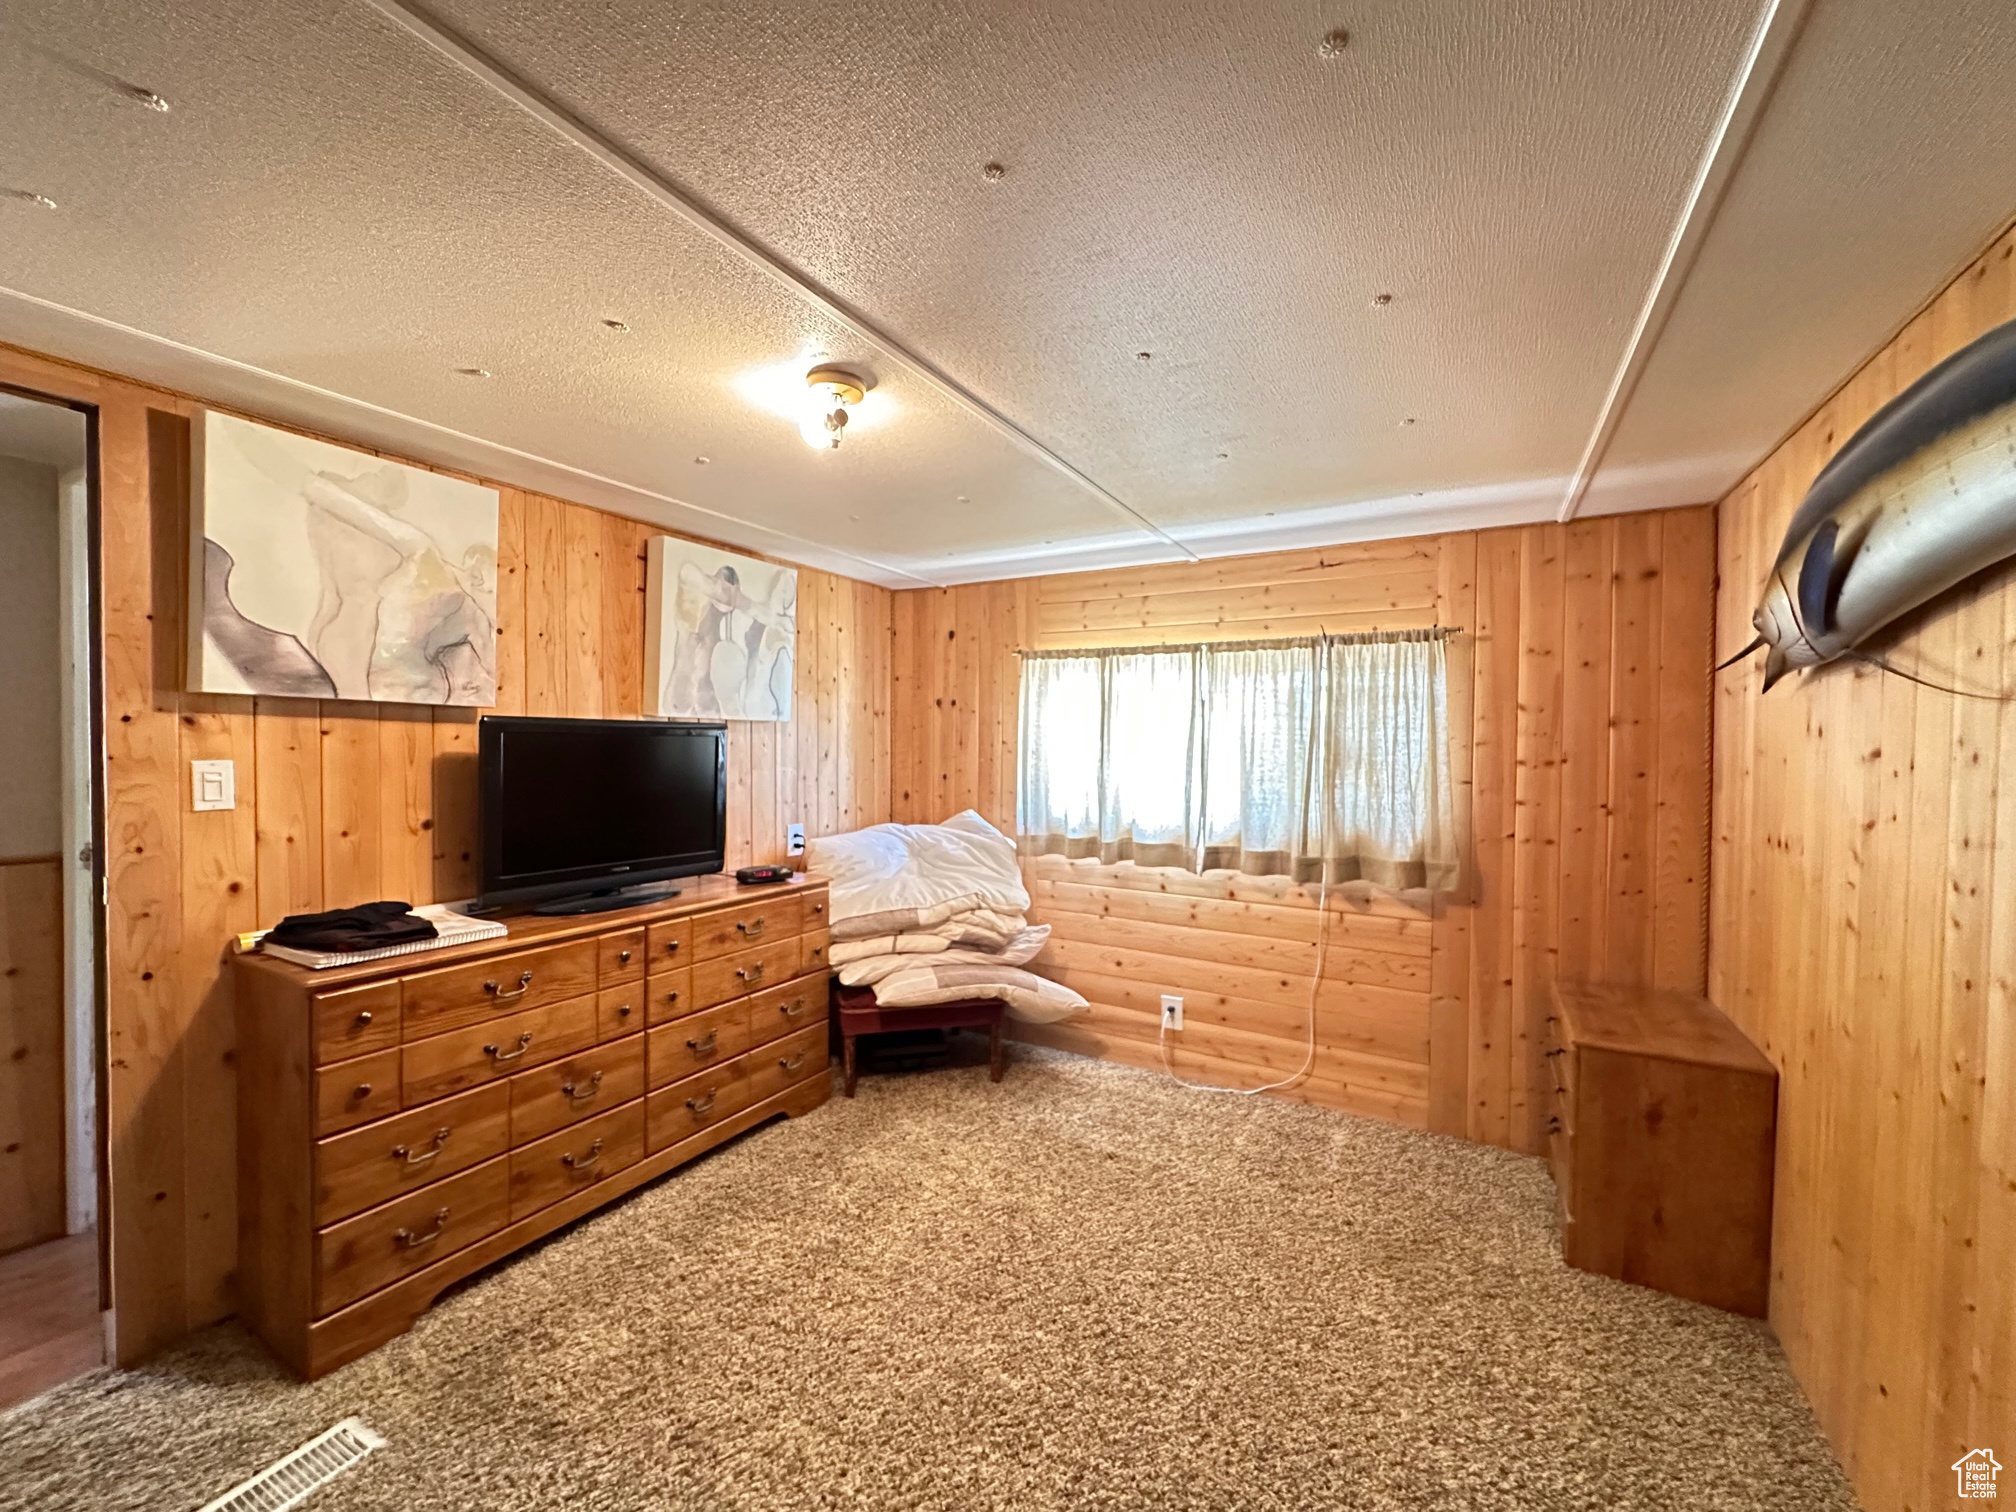 Bedroom with wooden walls, carpet flooring